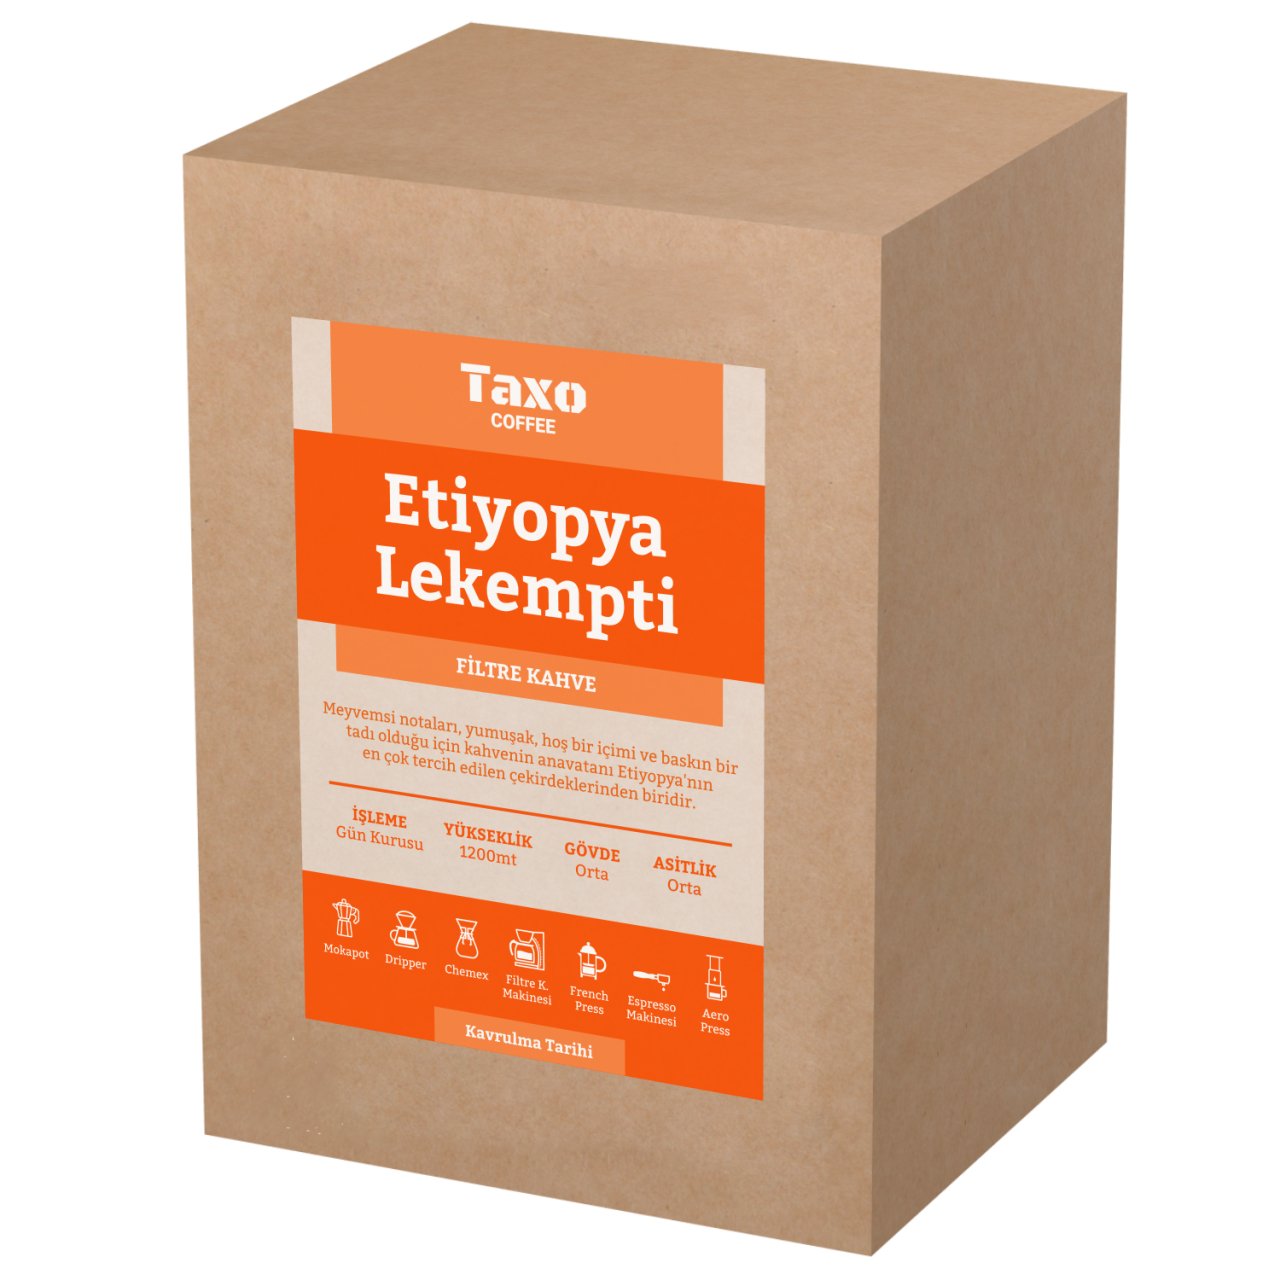 Etiyopya Lekempti 5kg Filtre Kahve